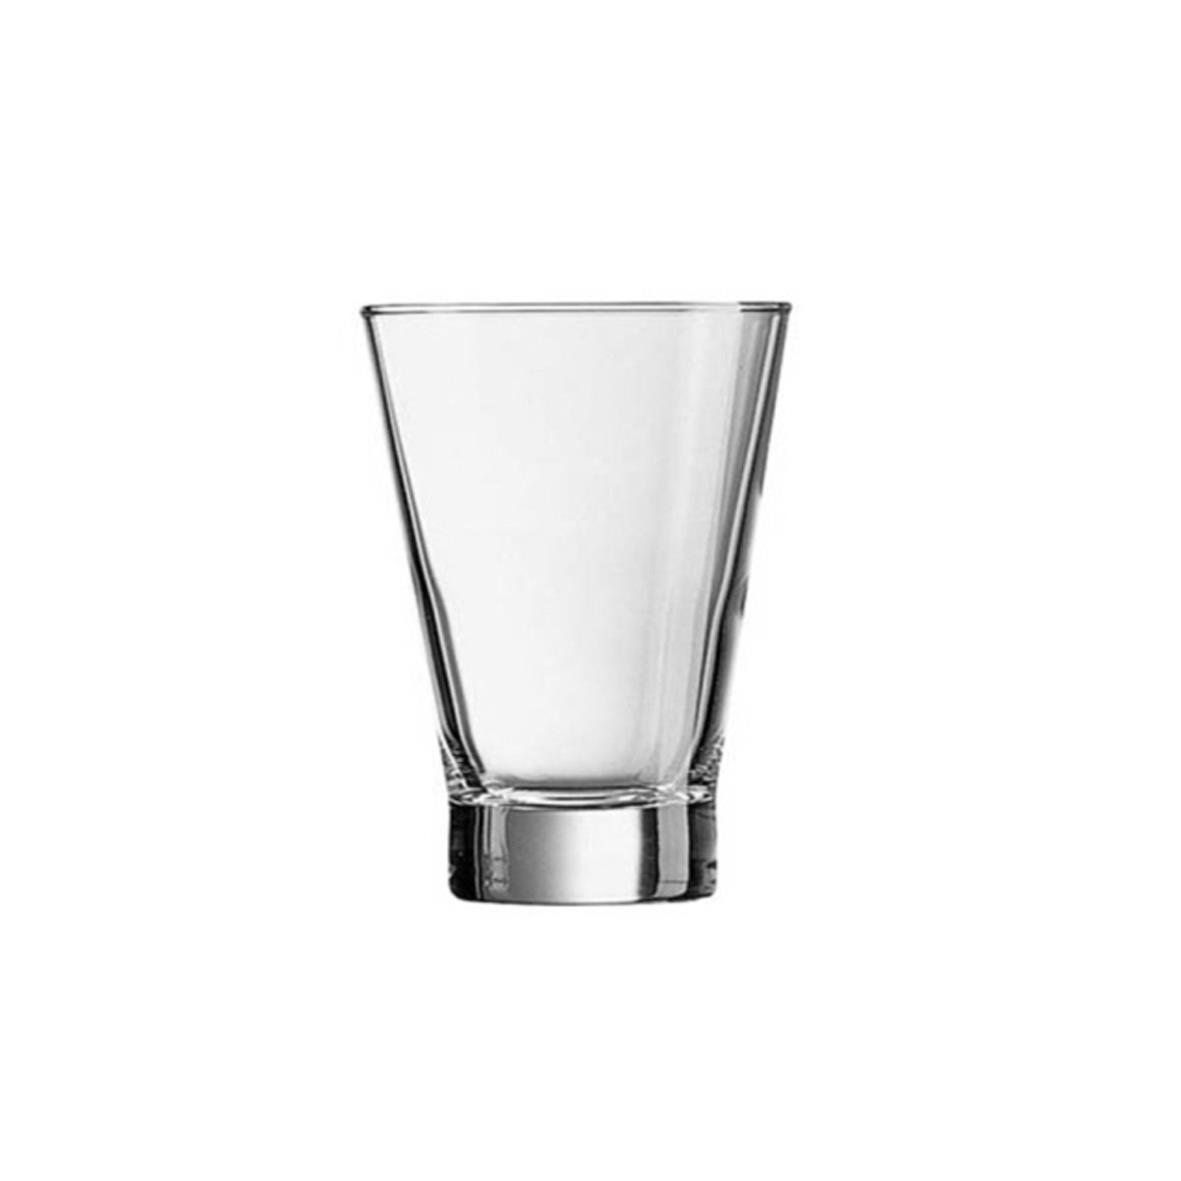 Shetlandglas mit einem Fassungsvermögen von 15 cl